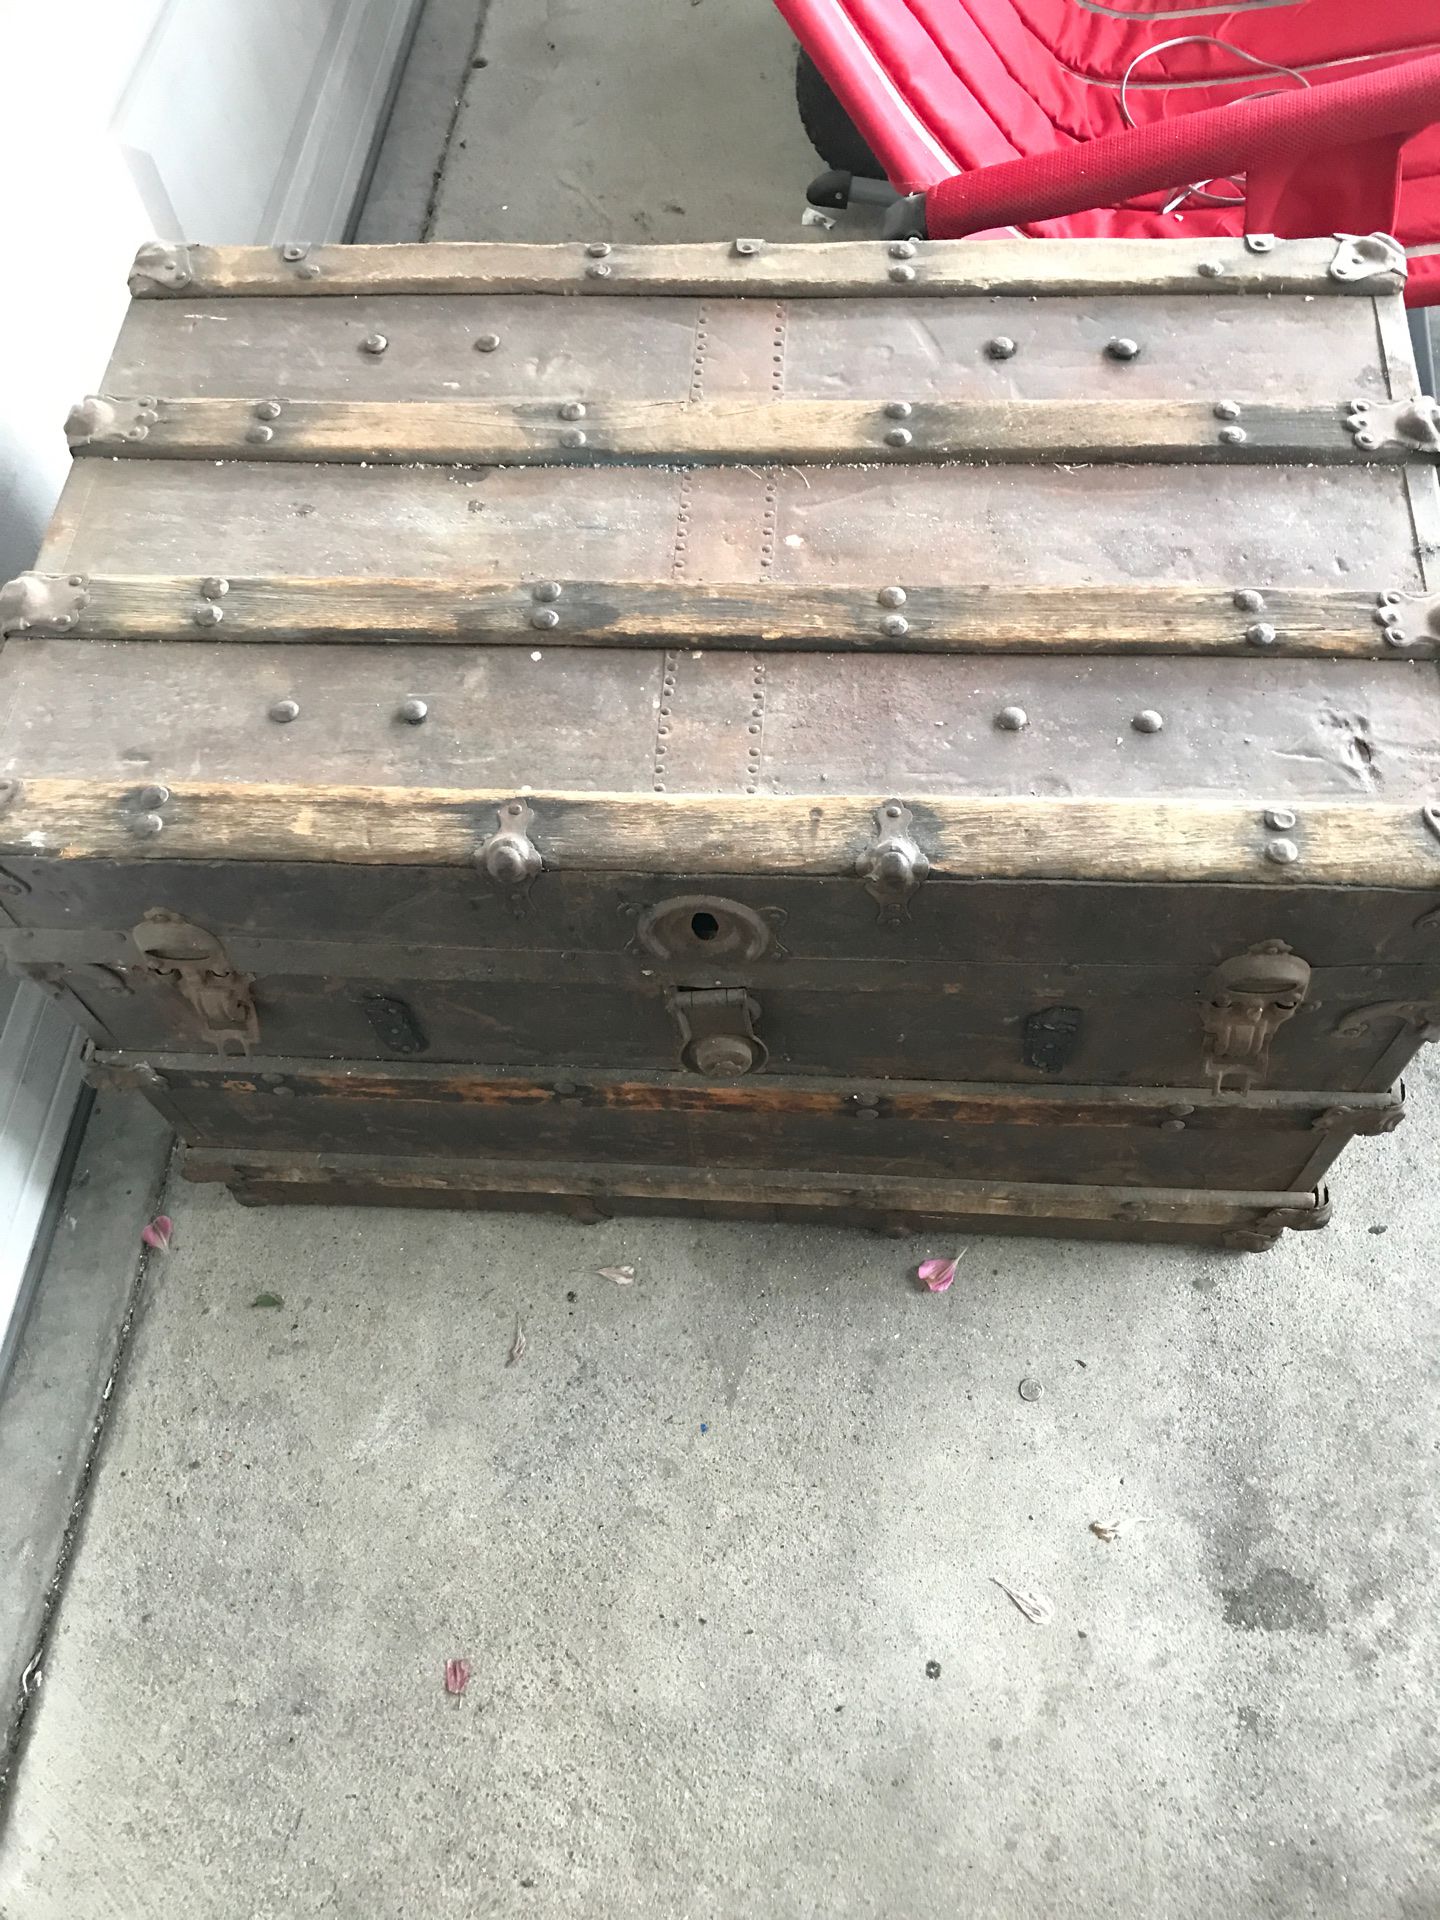 Vintage steamer wardrobe trunk